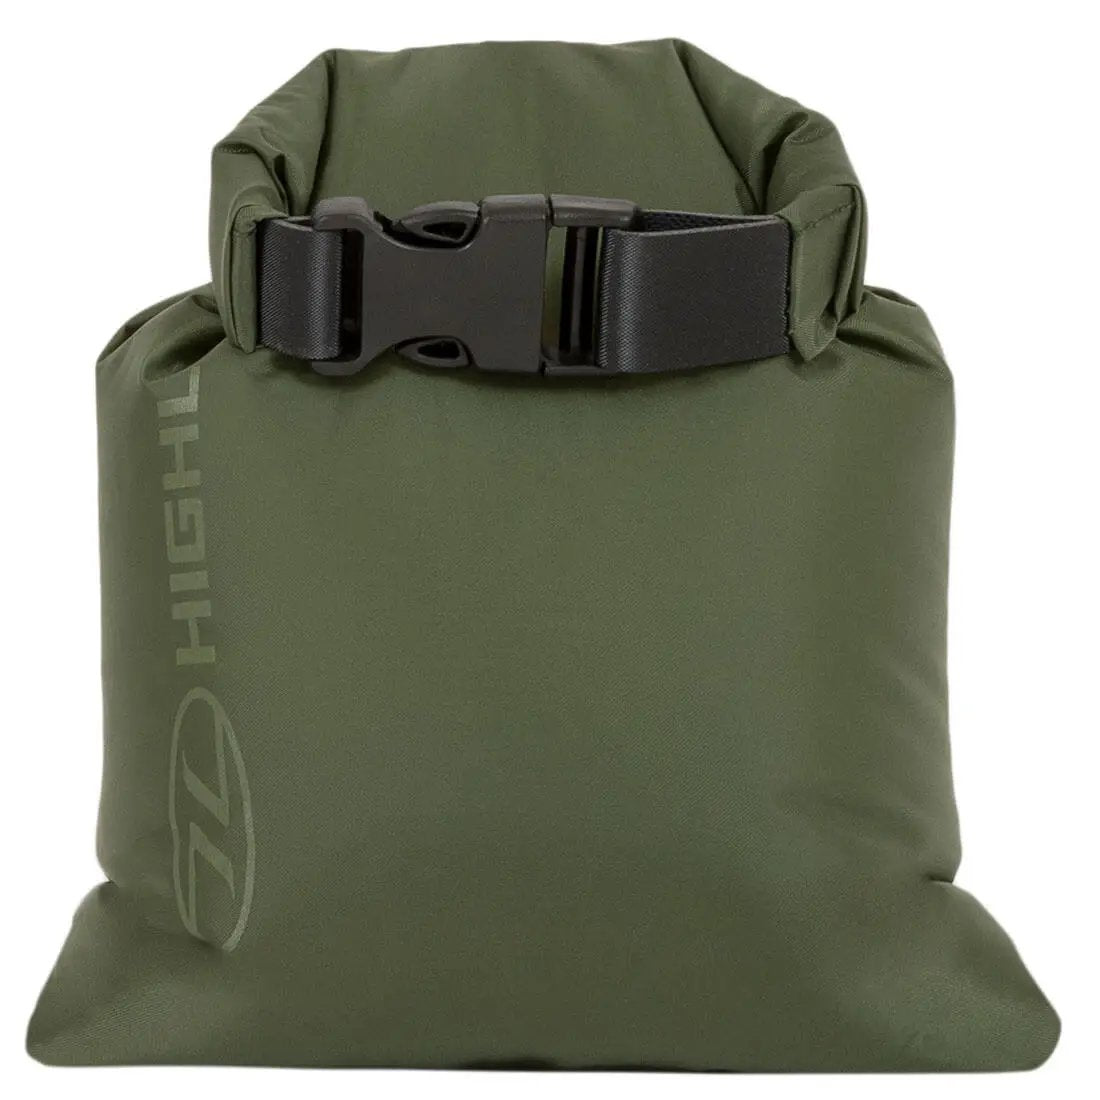 Highlander X-Lite Small Dry Bag Sack Liner - John Bull Clothing